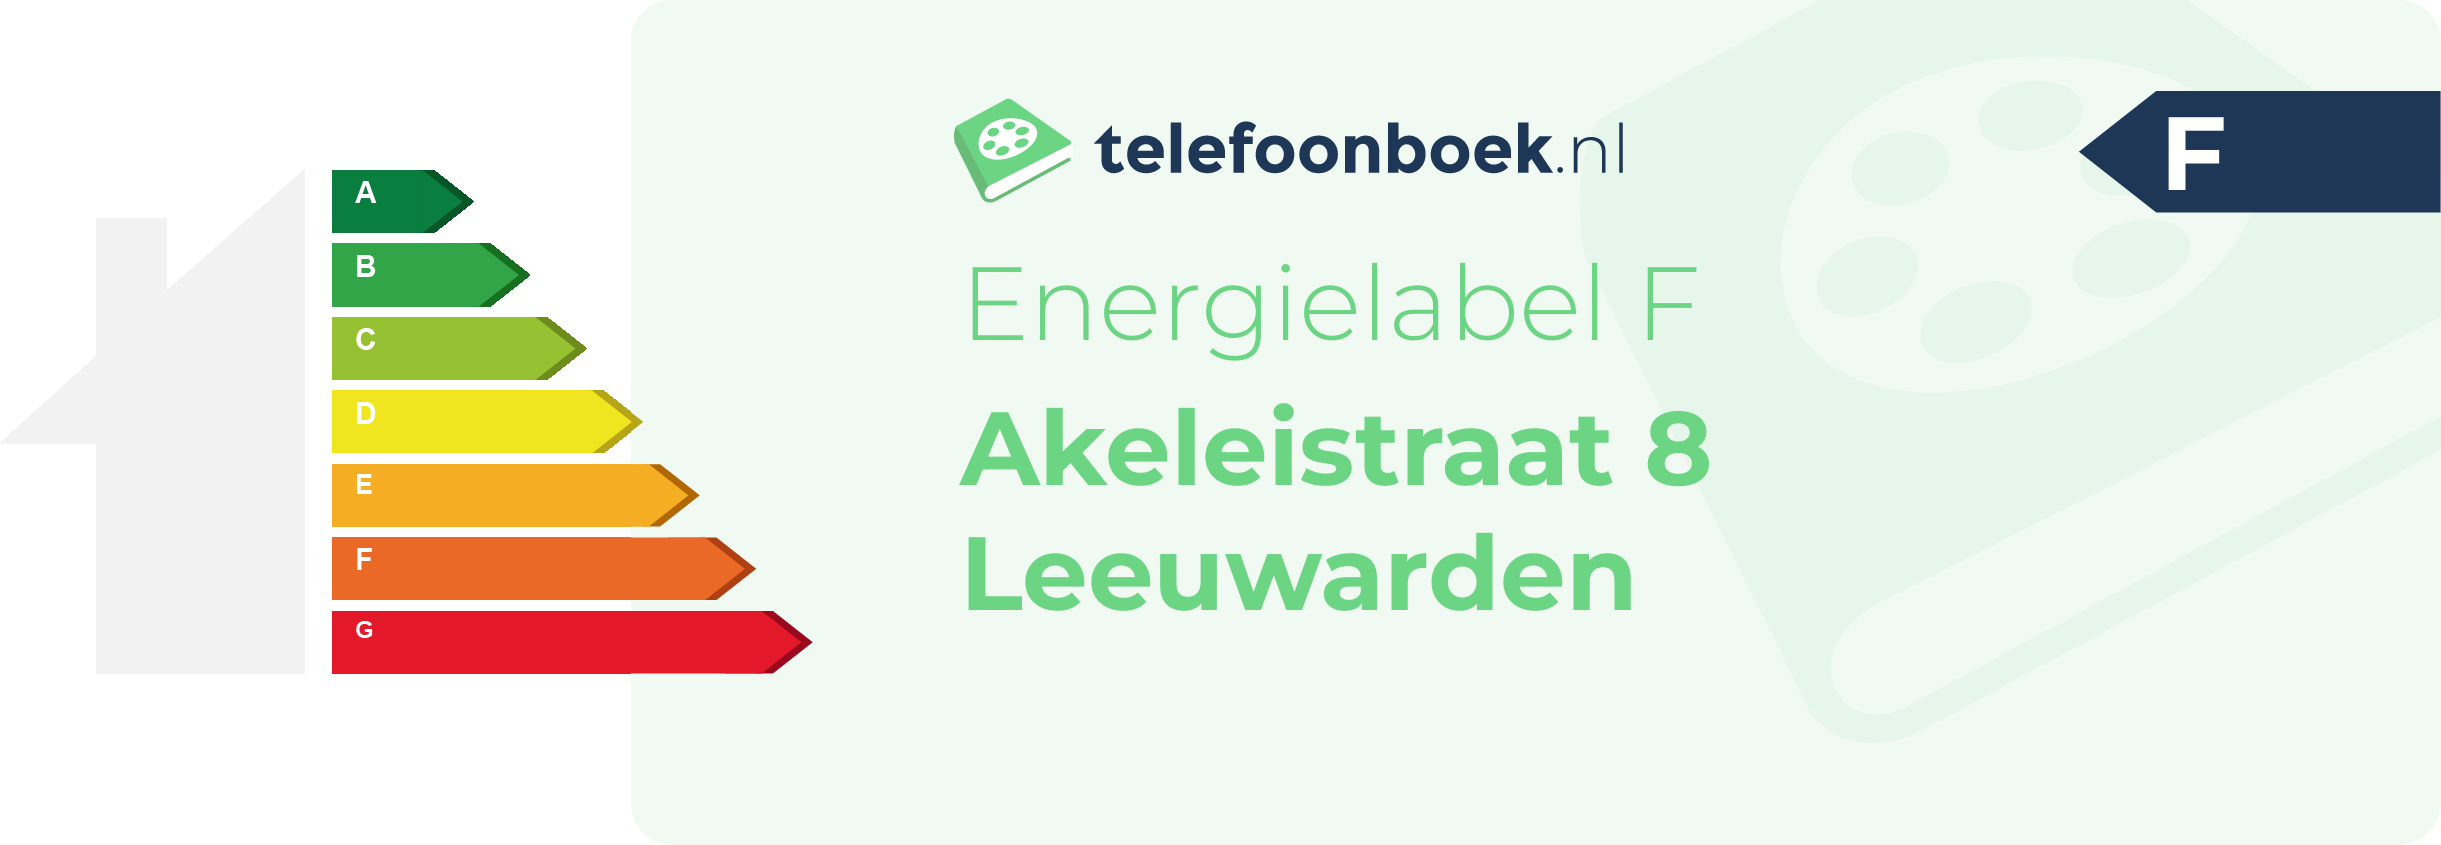 Energielabel Akeleistraat 8 Leeuwarden